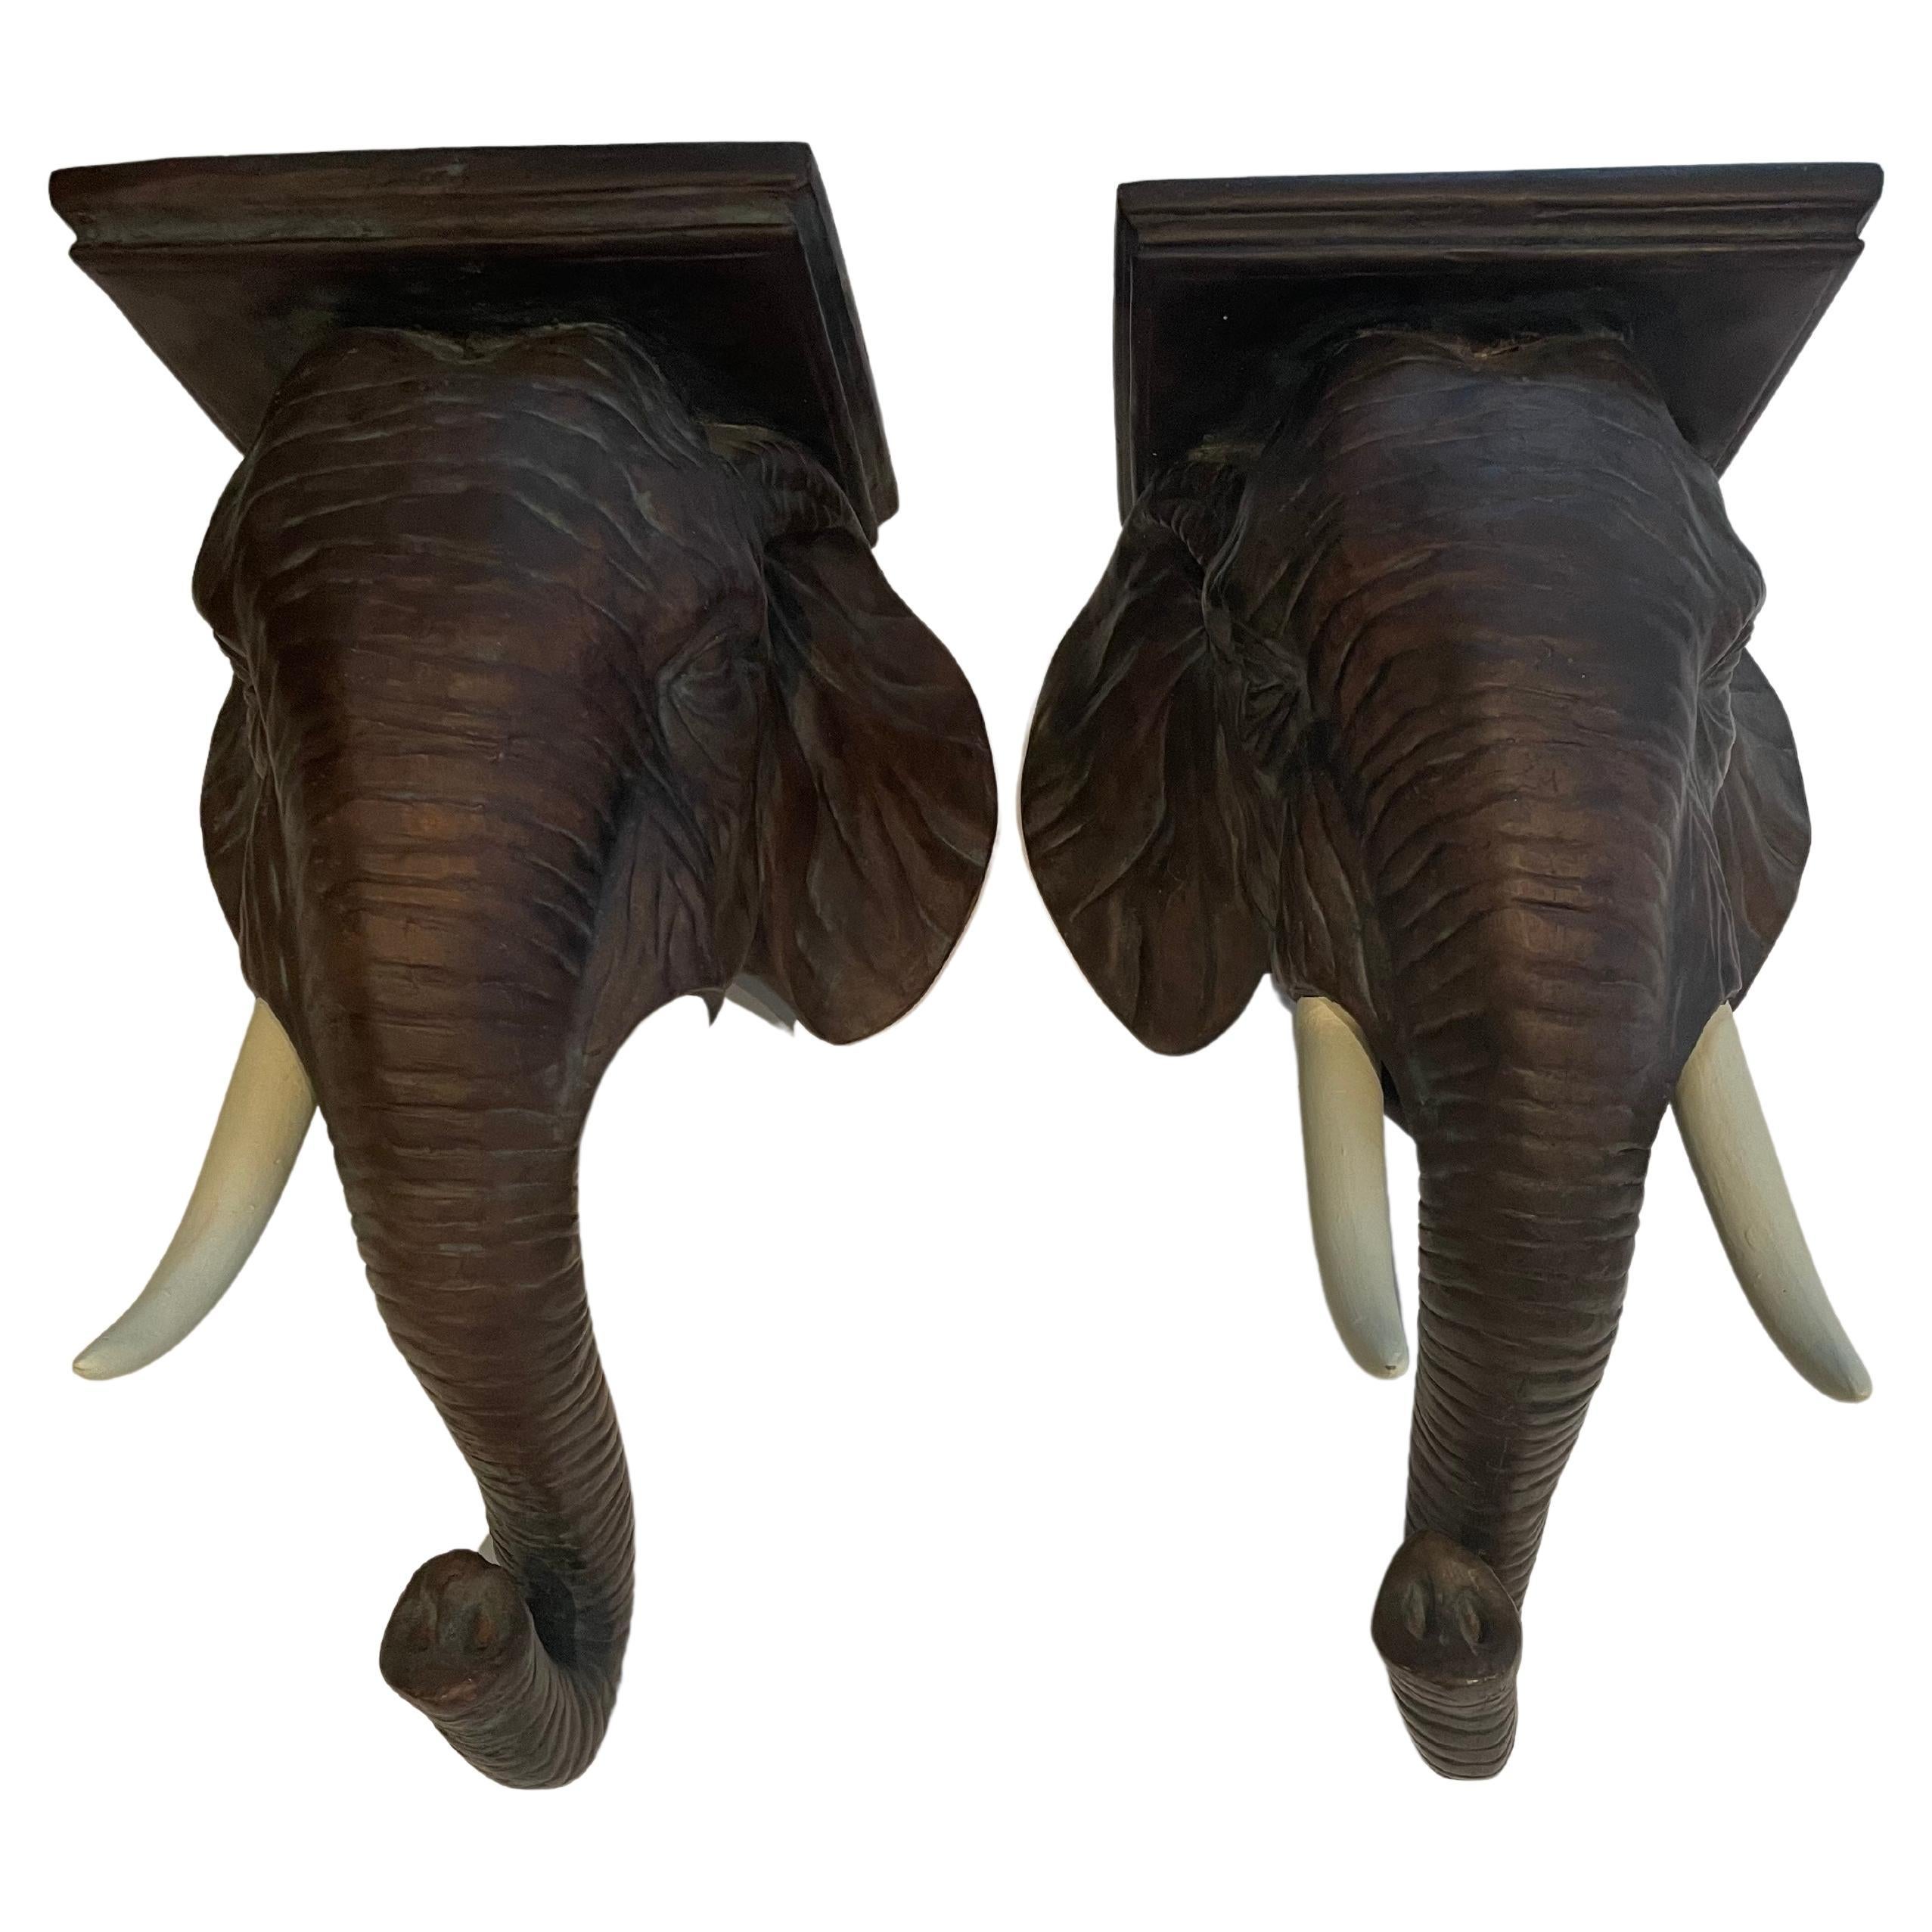 Sensational Pair of Sculptural Elephant Form Wall Brackets